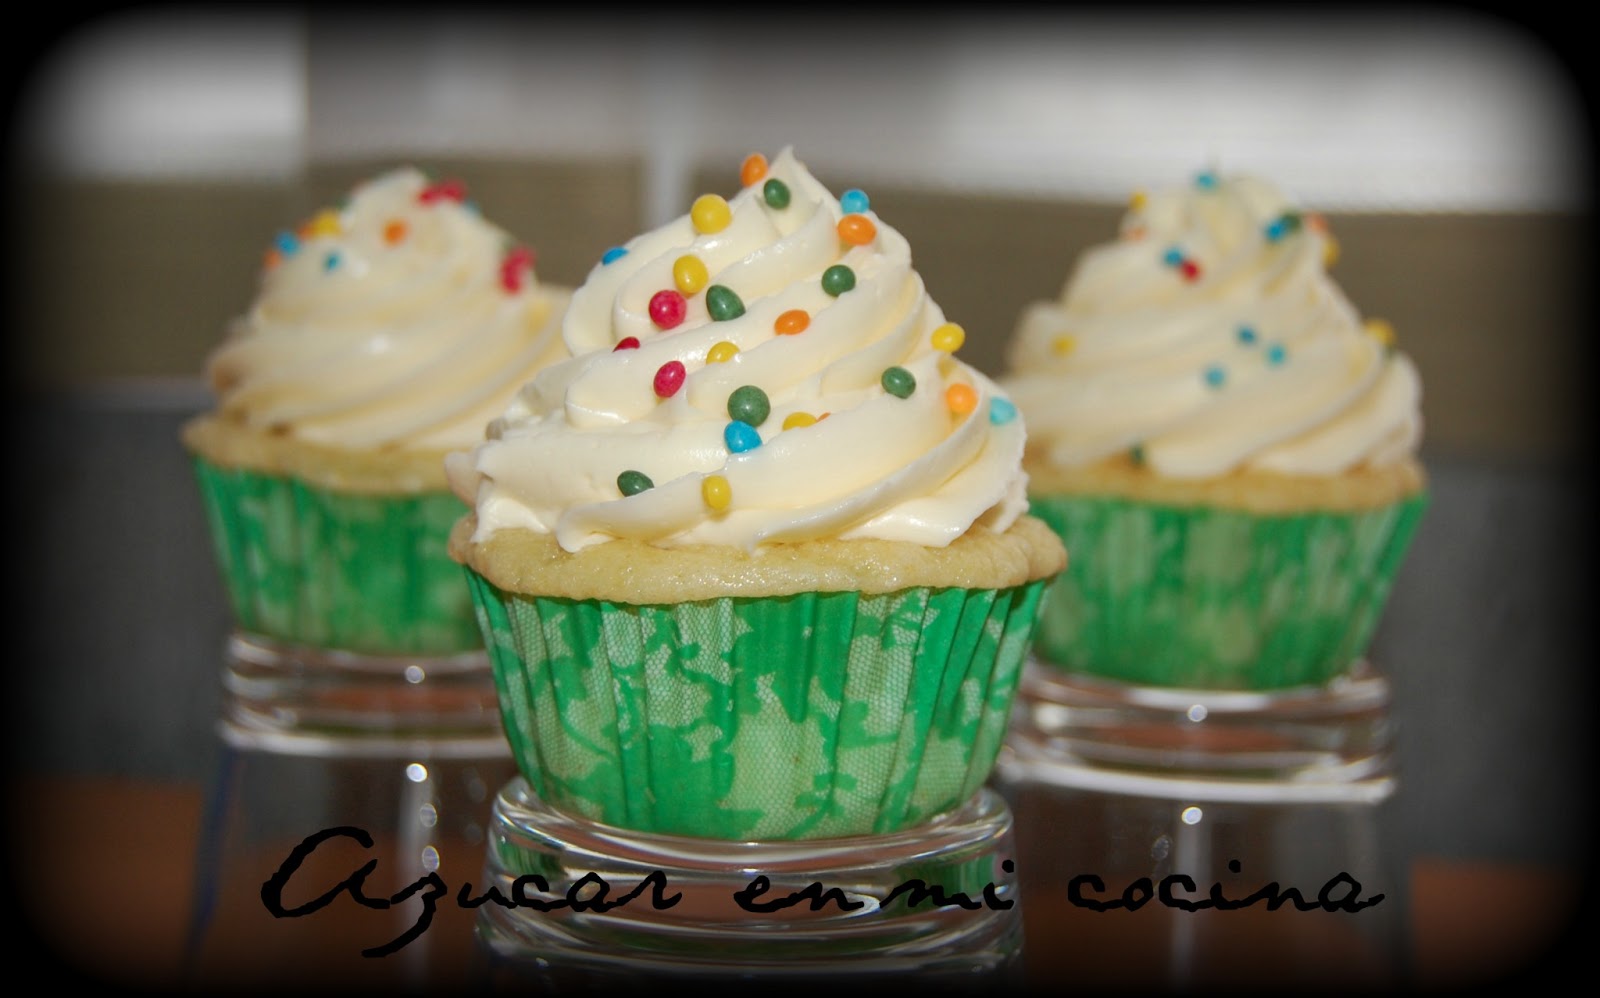 http://azucarenmicocina.blogspot.com.es/2013/07/cupcakes-de-chocolate-blanco-con-swiss.html